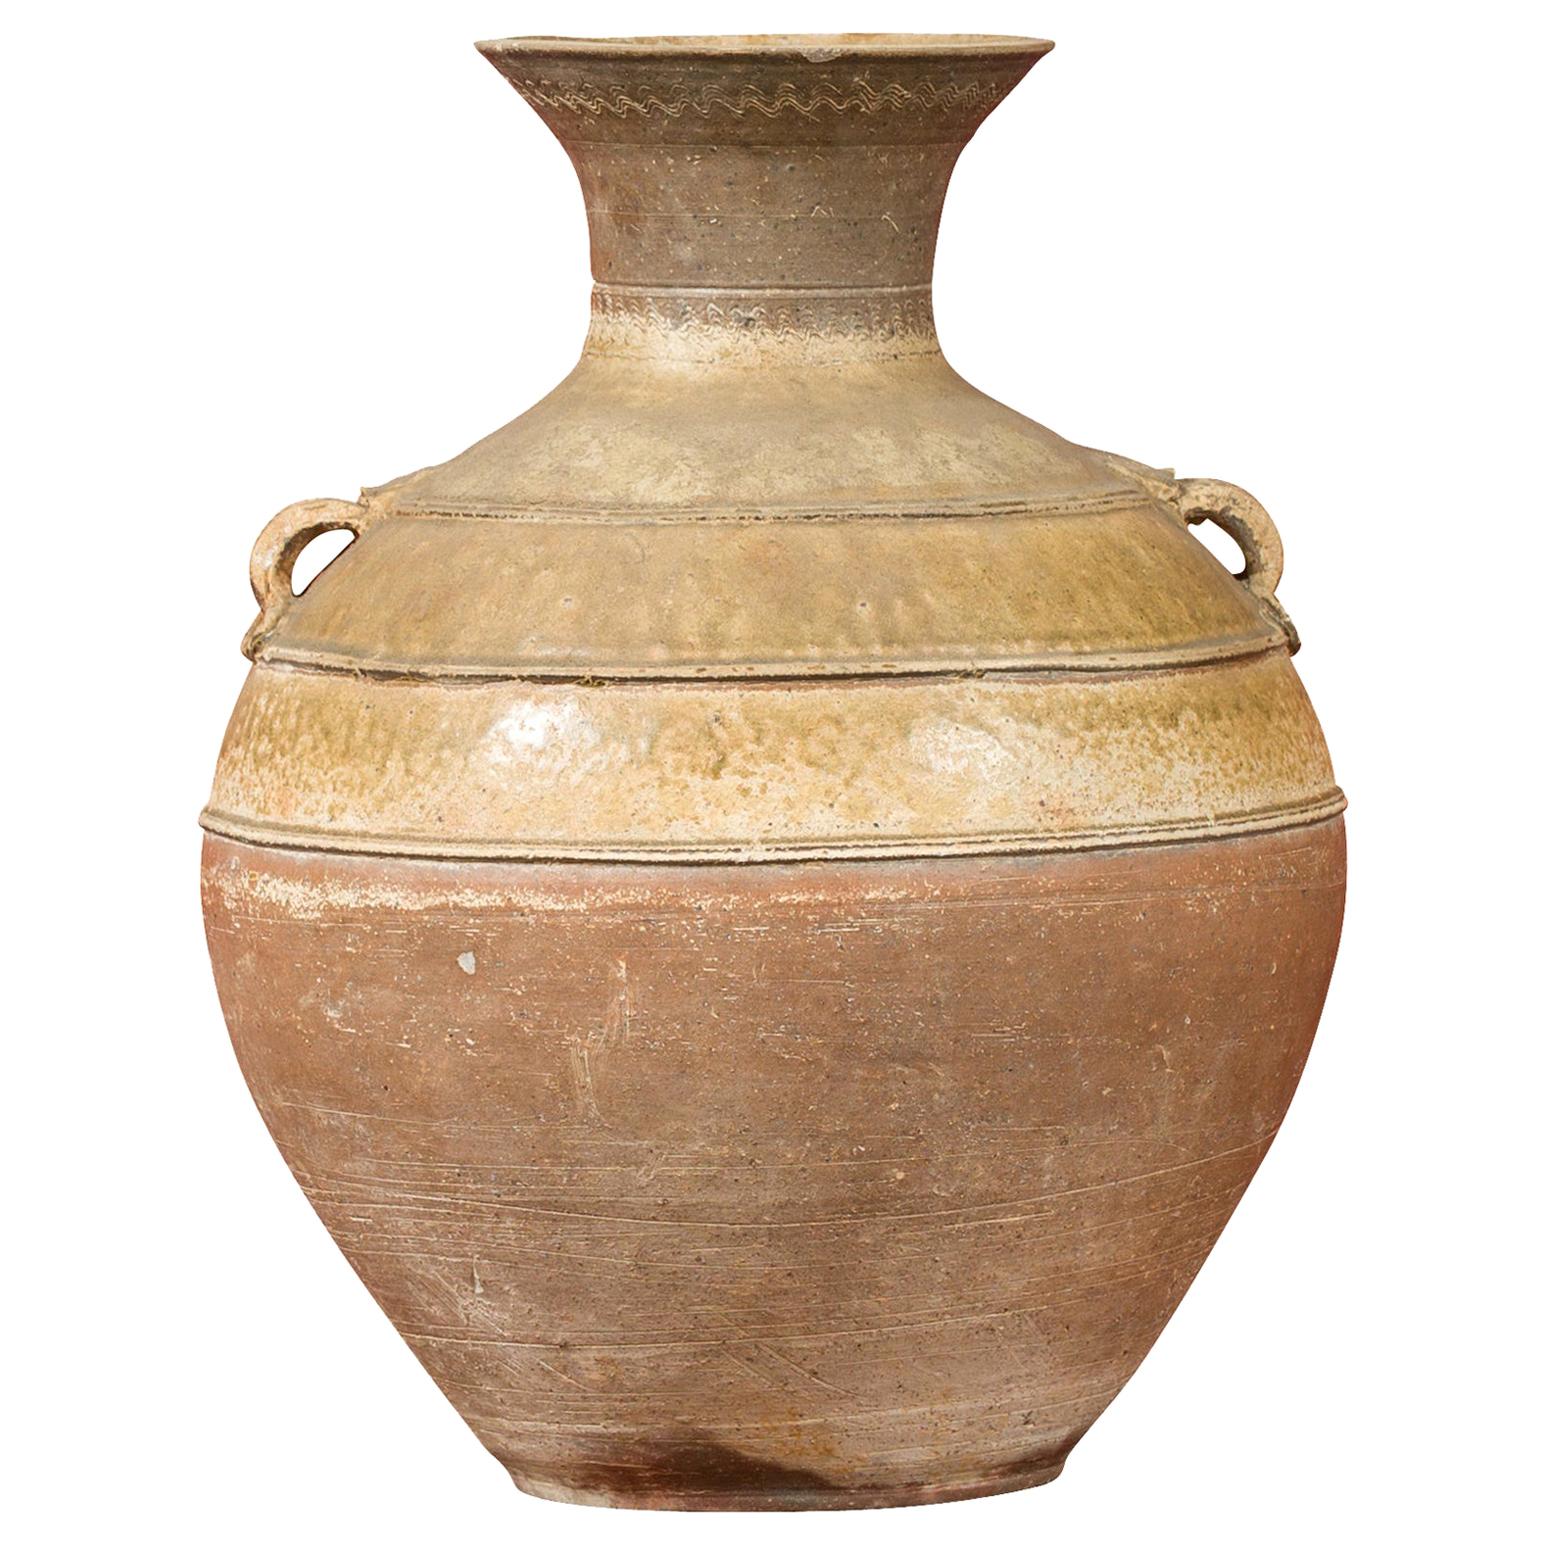 Vase Hu émaillé de la dynastie chinoise Han avec petites poignées, datant d'environ 202 avant J.-C. - 200 après J.-C.